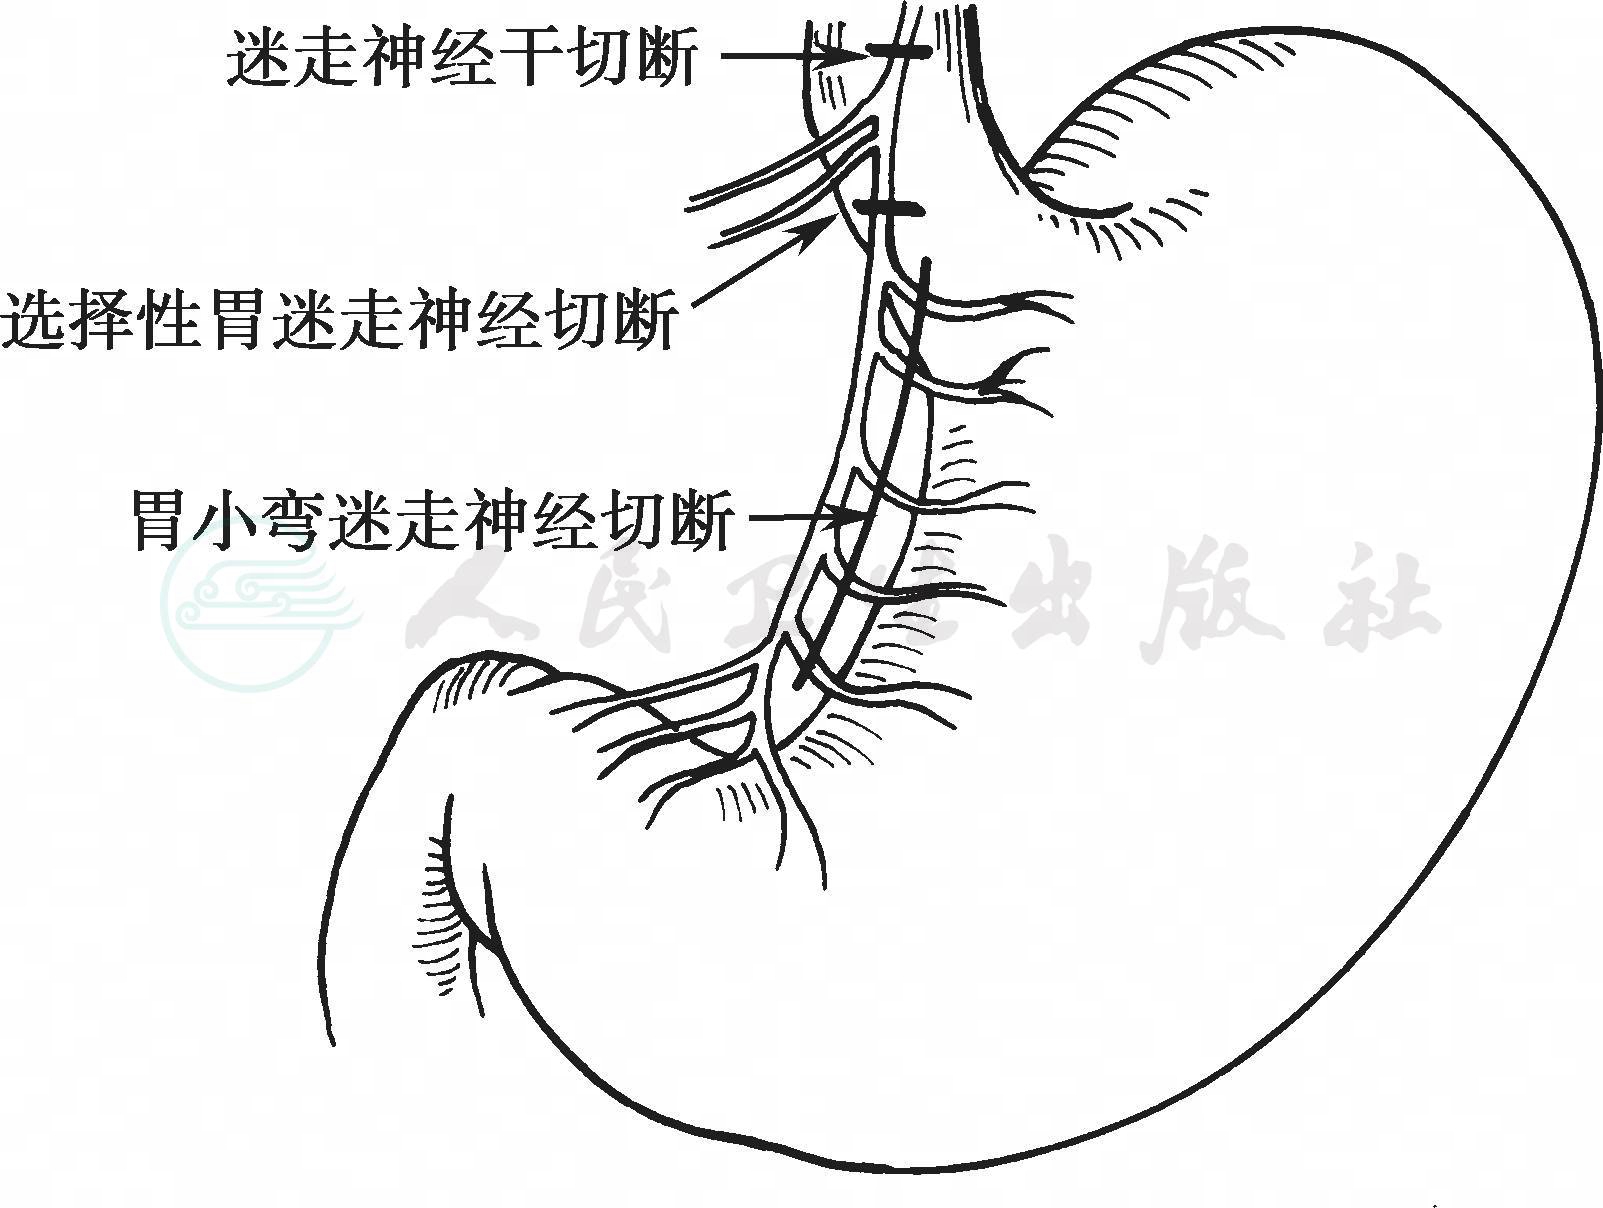 图2-181 胸后壁的血管神经(侧面观)-外科学-医学